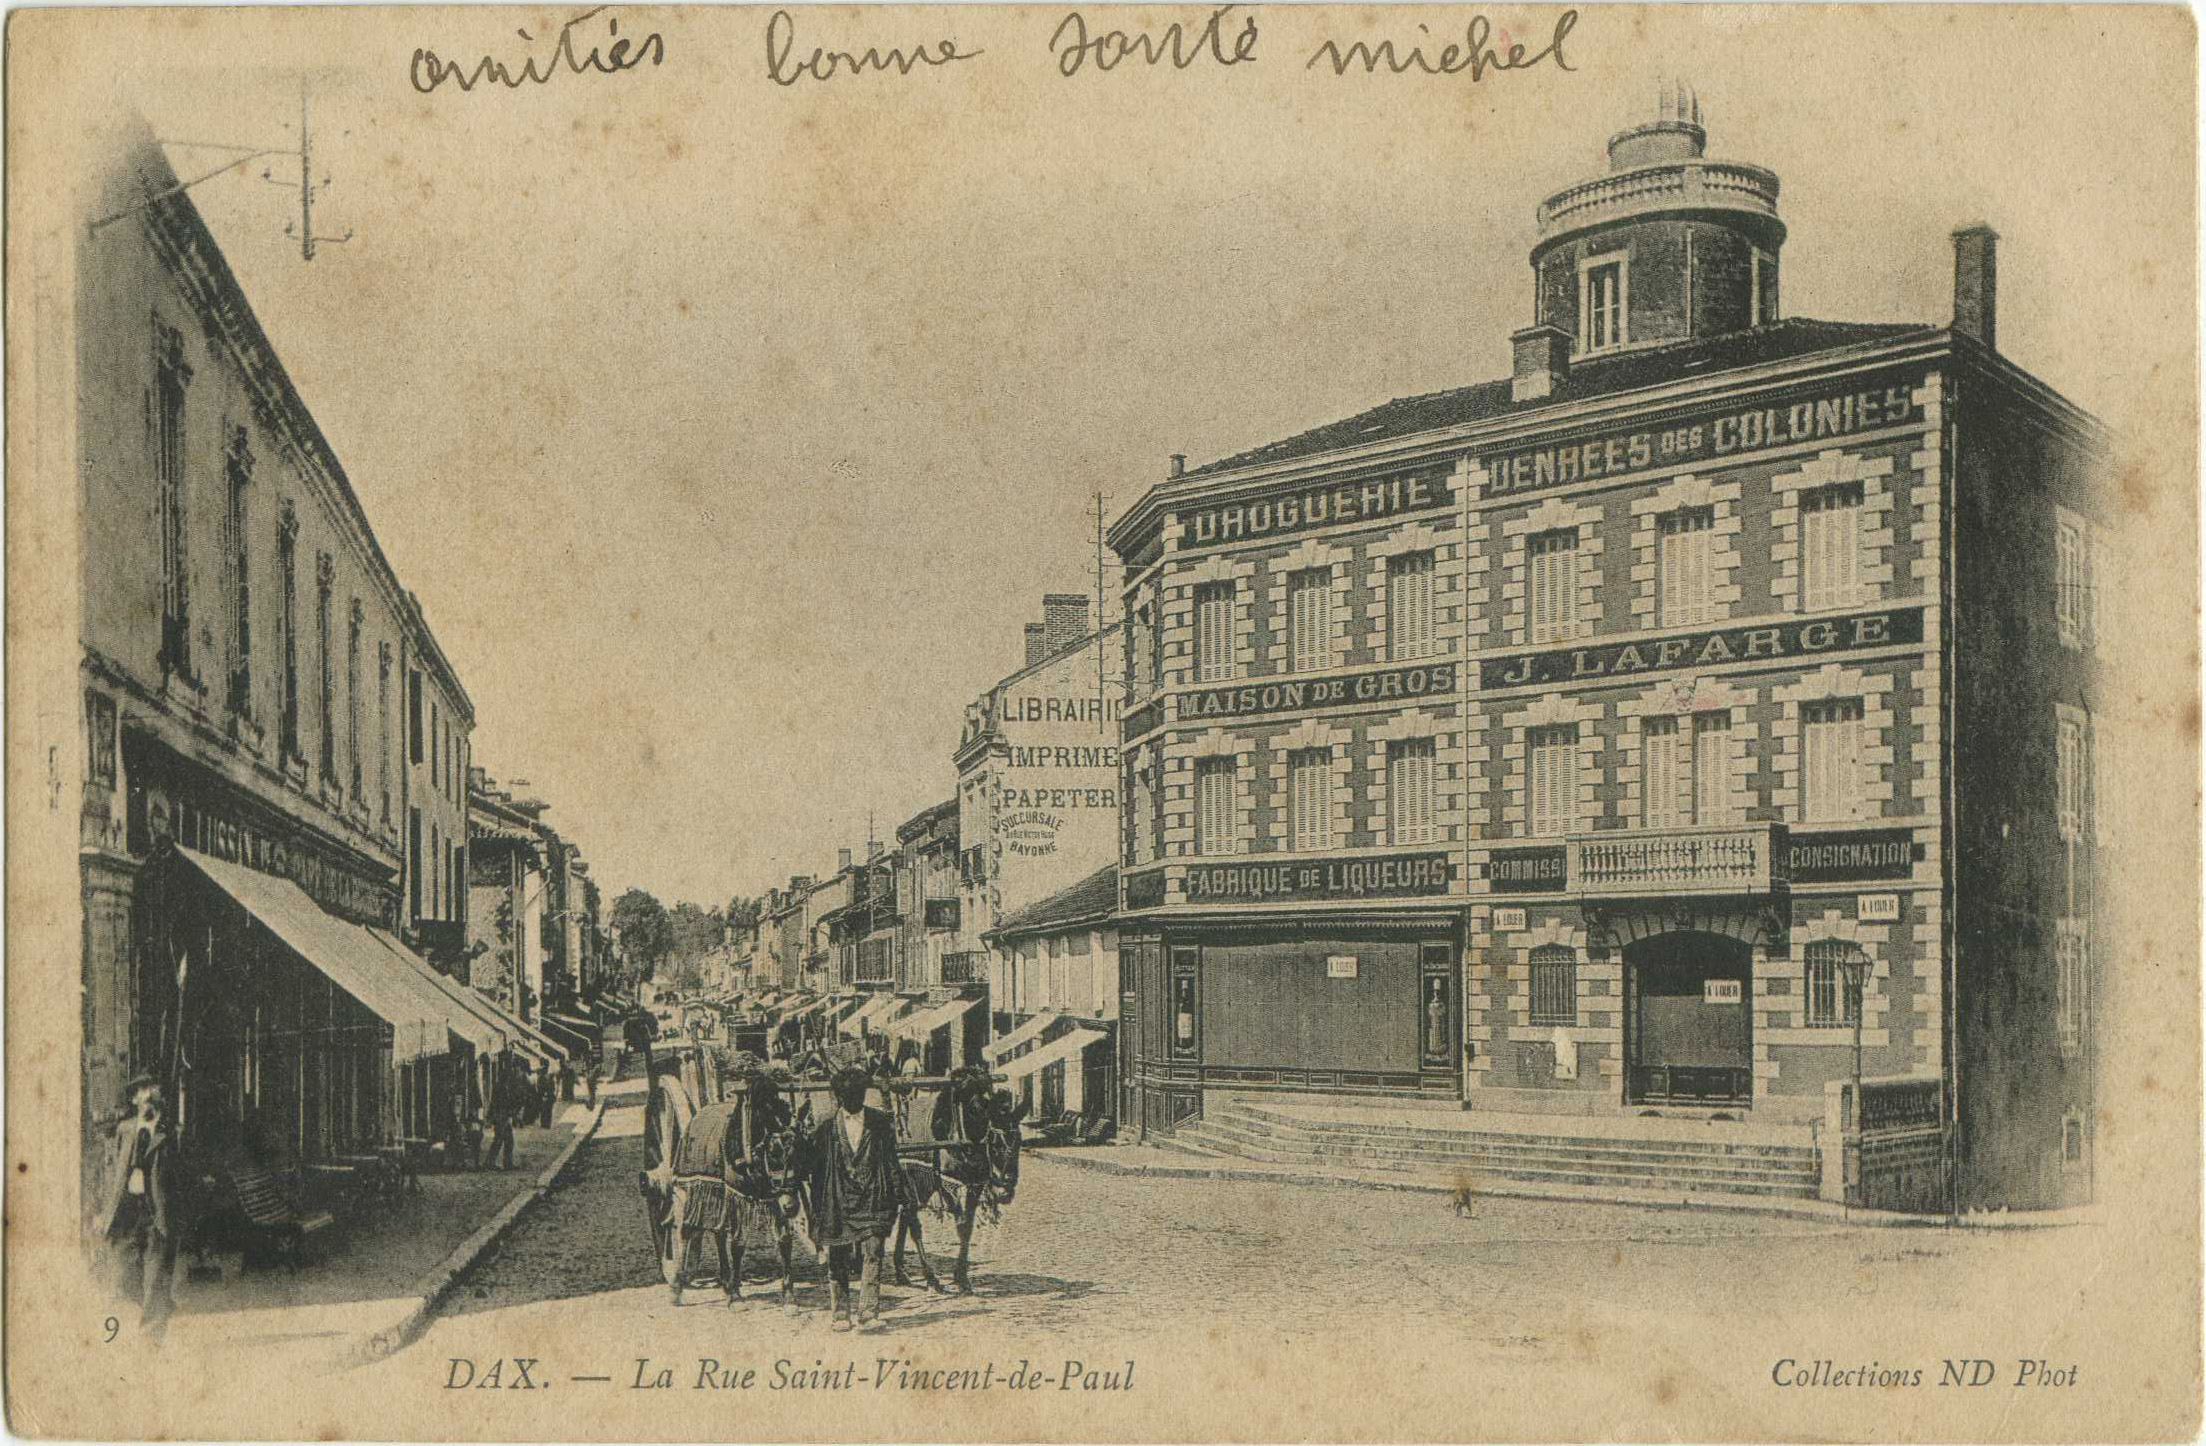 Dax - La Rue Saint-Vincent-de-Paul